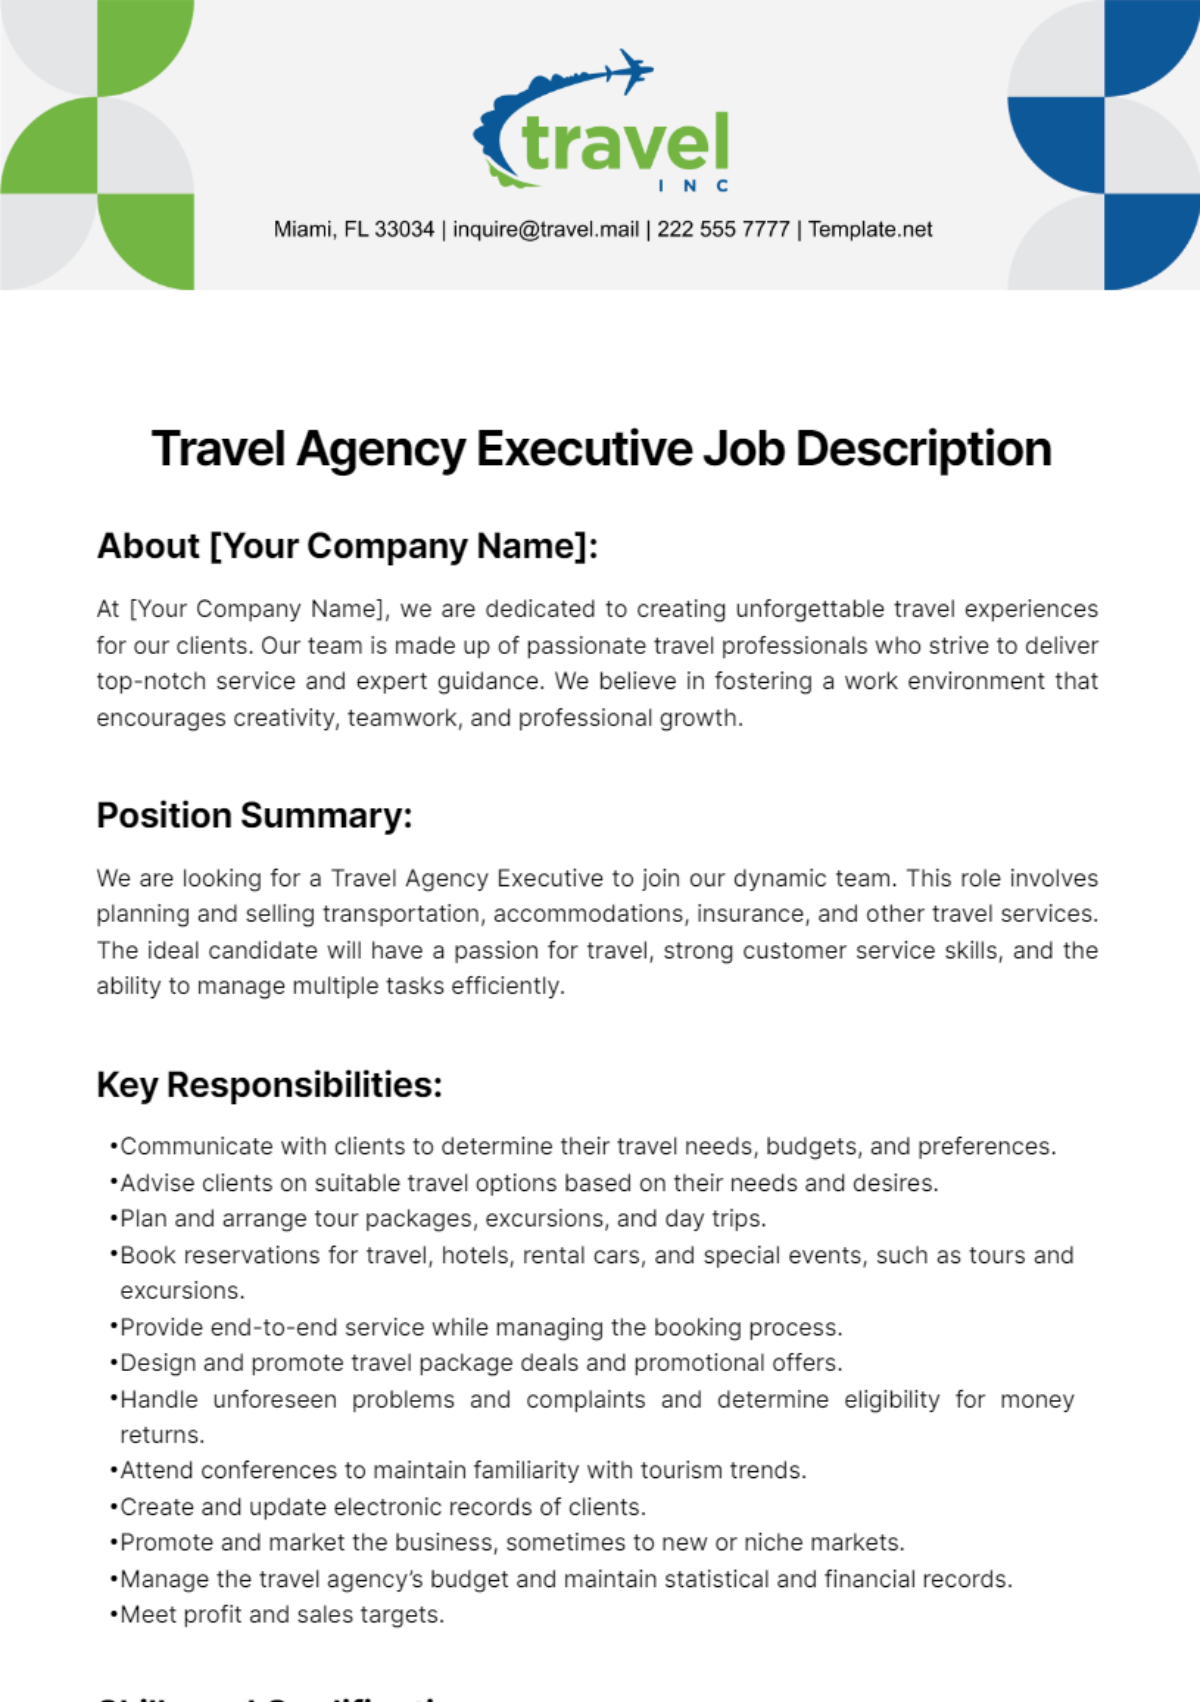 Travel Agency Executive Job Description Template